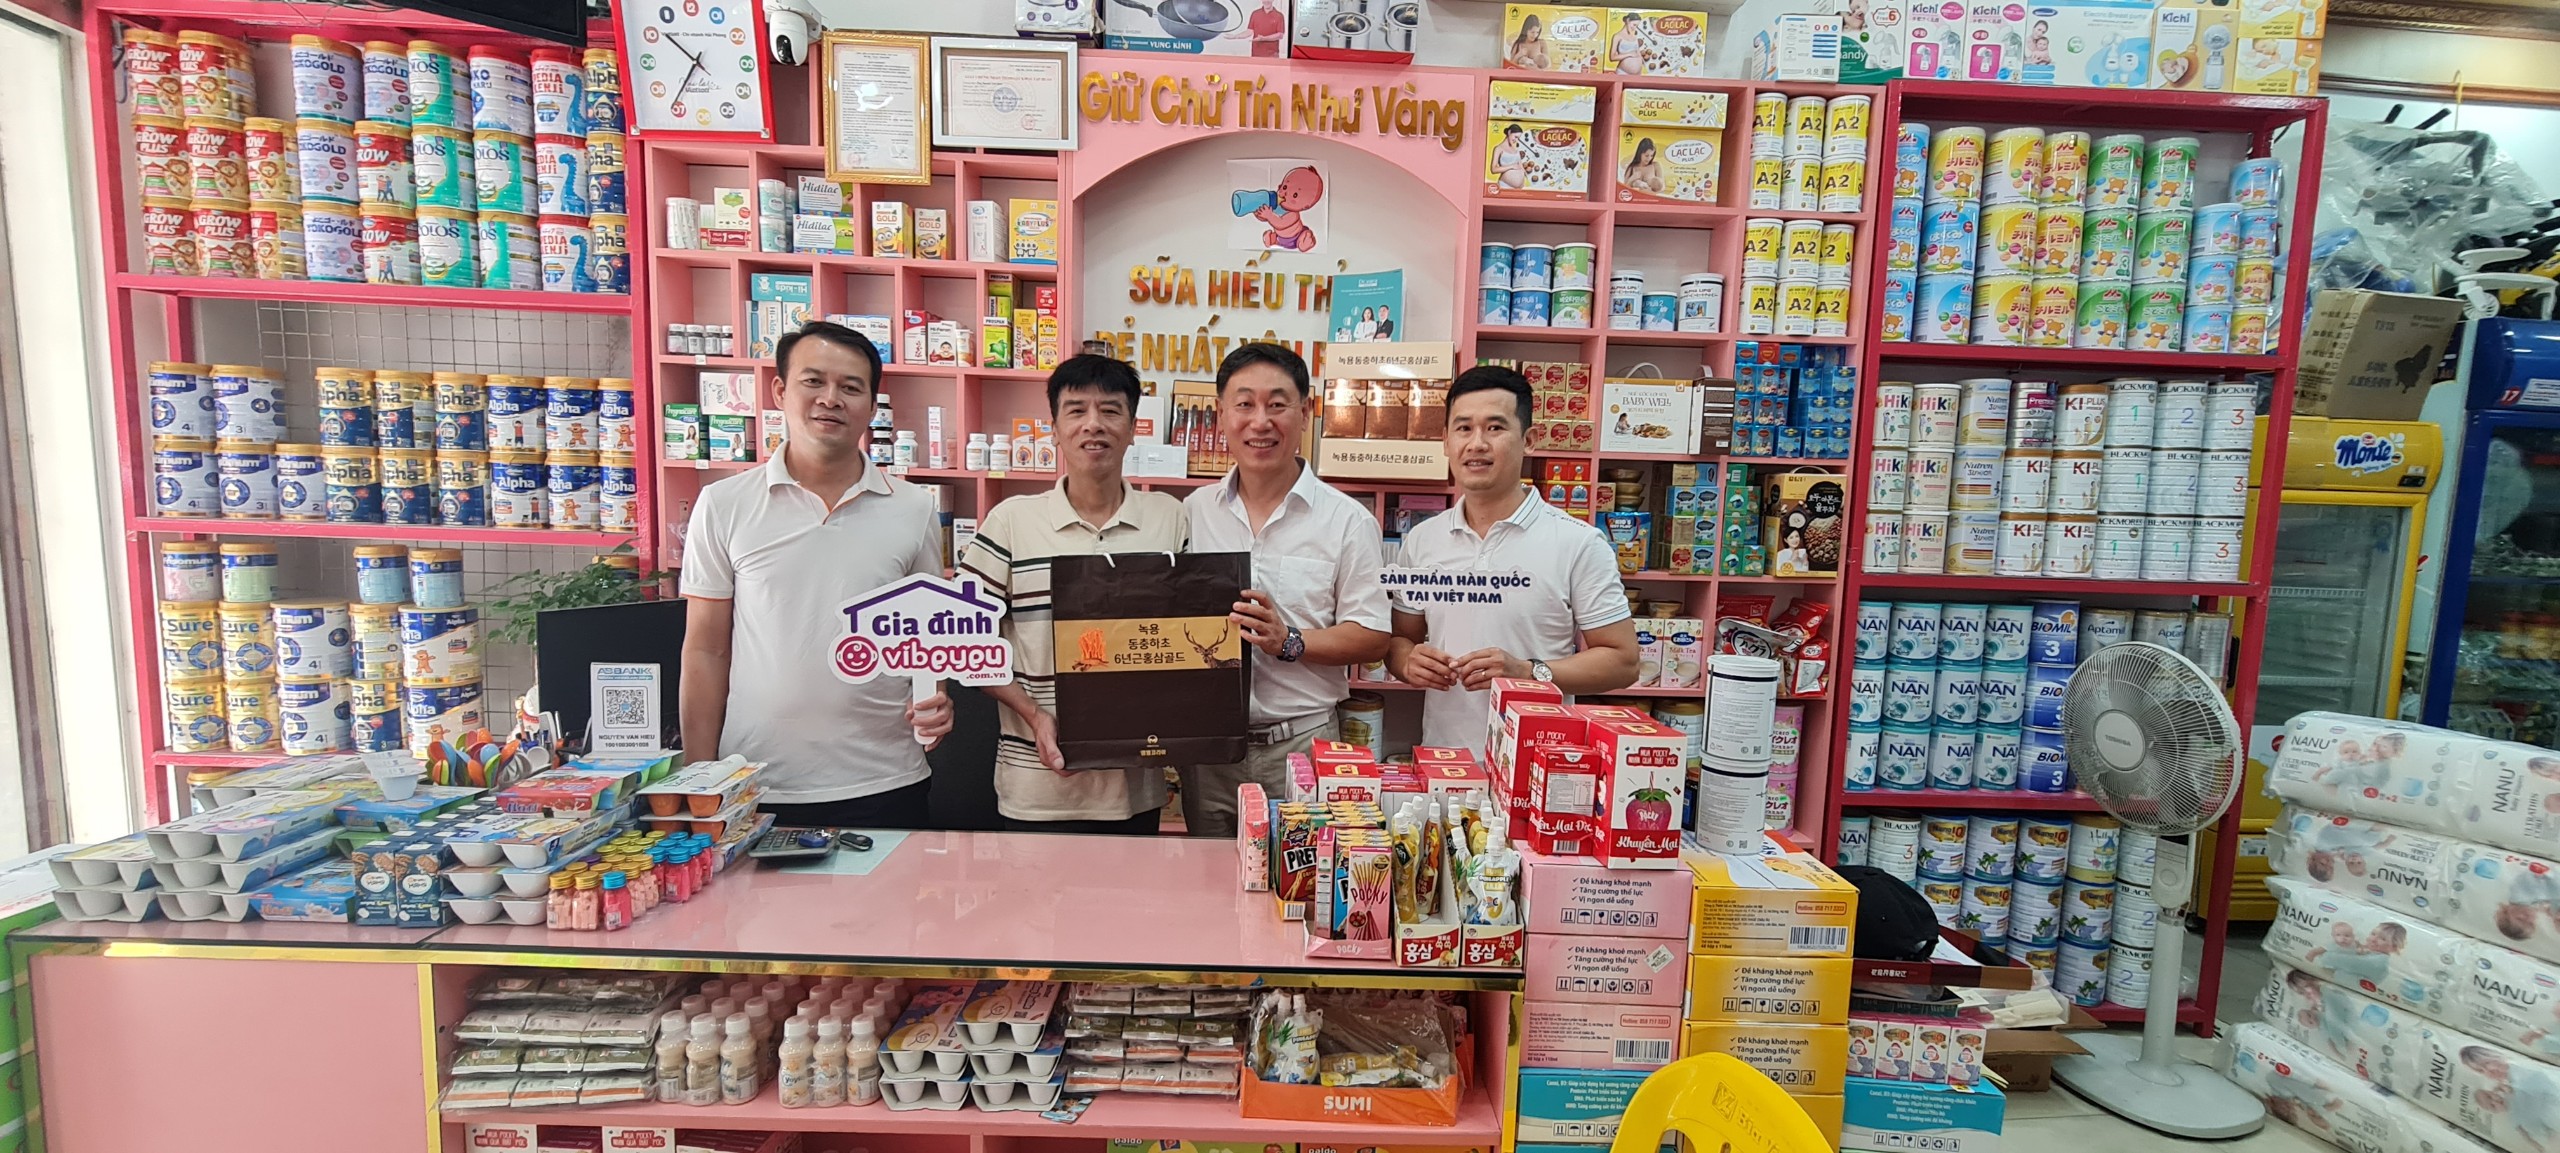 Chuyến gặp mặt ý nghĩa từ Kang Seung Young – Founder MMKorea tại khu vực Bắc Ninh